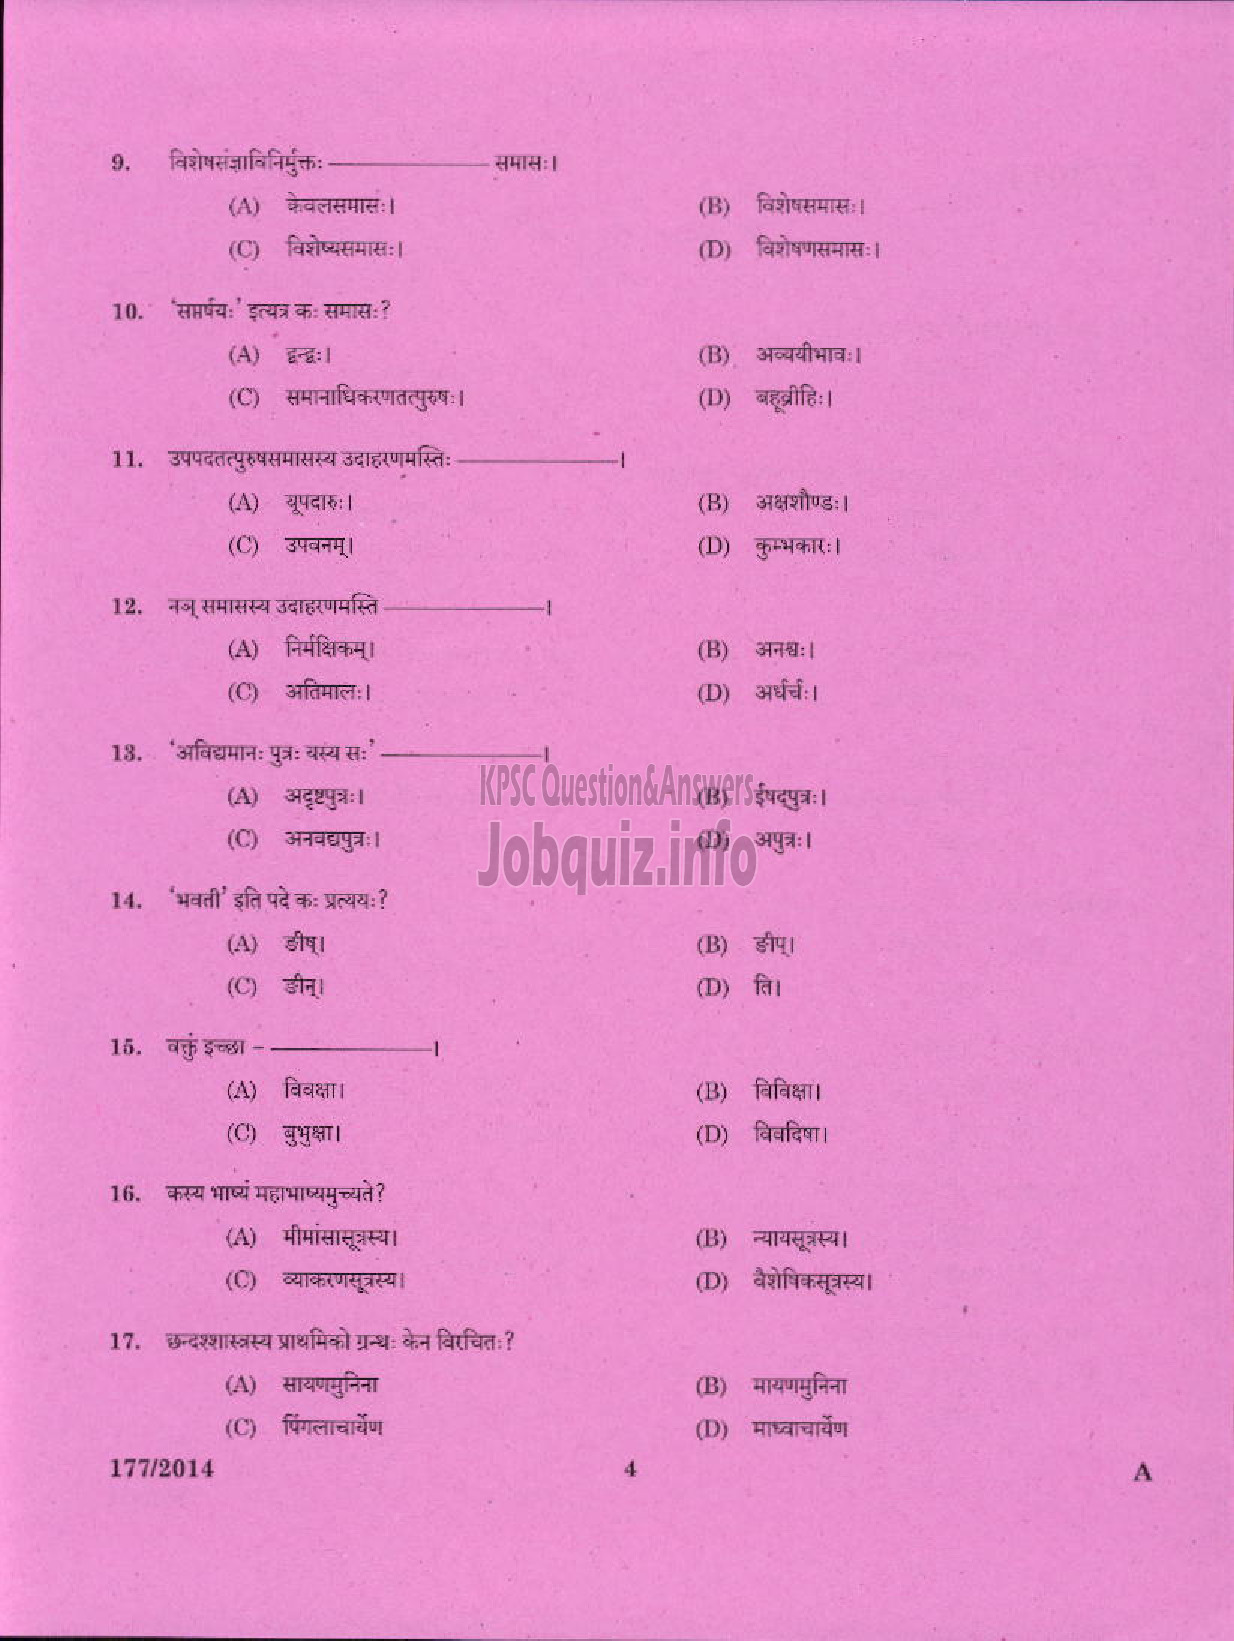 Kerala PSC Question Paper - PART TIME JUNIOR LANGUAGE TEACHER SANSKRIT EDUCATION-2